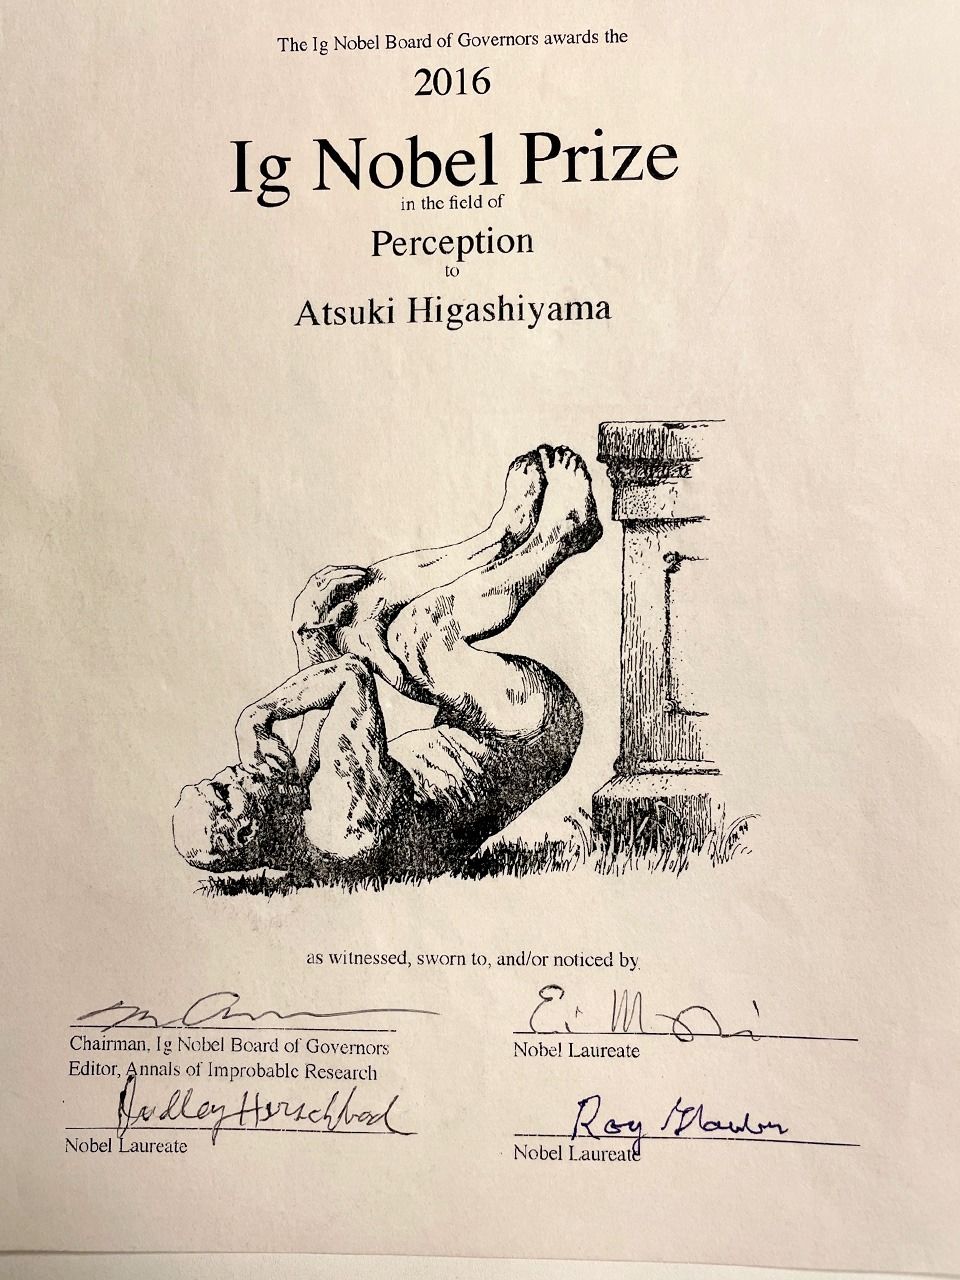 شهادة الفوز بجائزة نوبل للحماقة العلمية التي تم إرسالها للأستاذ هيغاشياما.